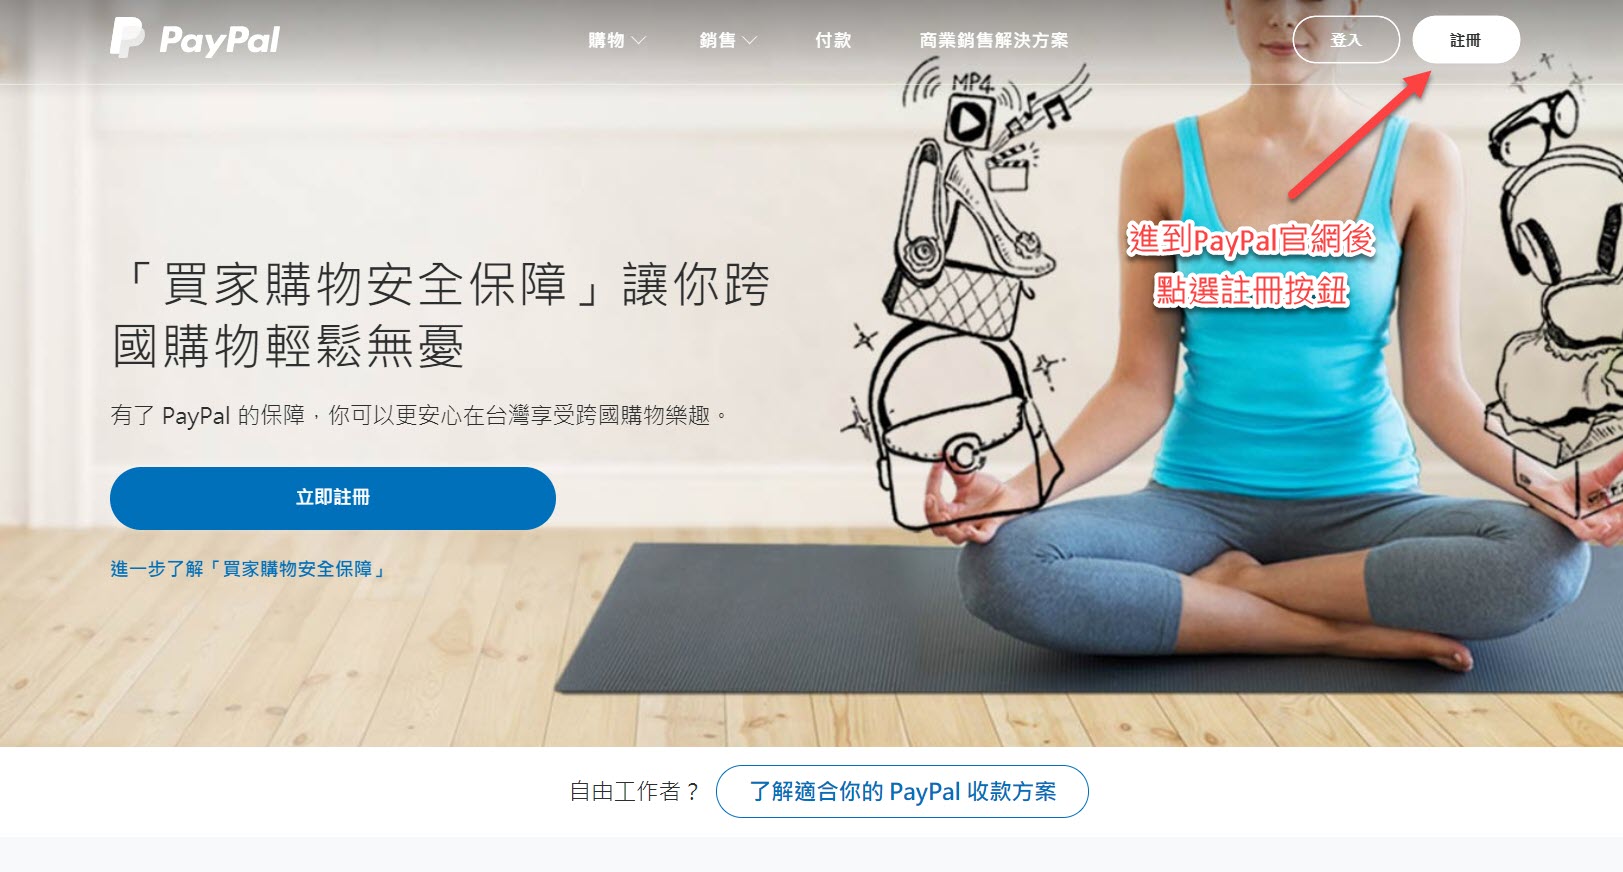 香港 PayPal 註冊步驟及使用教學1. 進入香港 Paypal官網 註冊